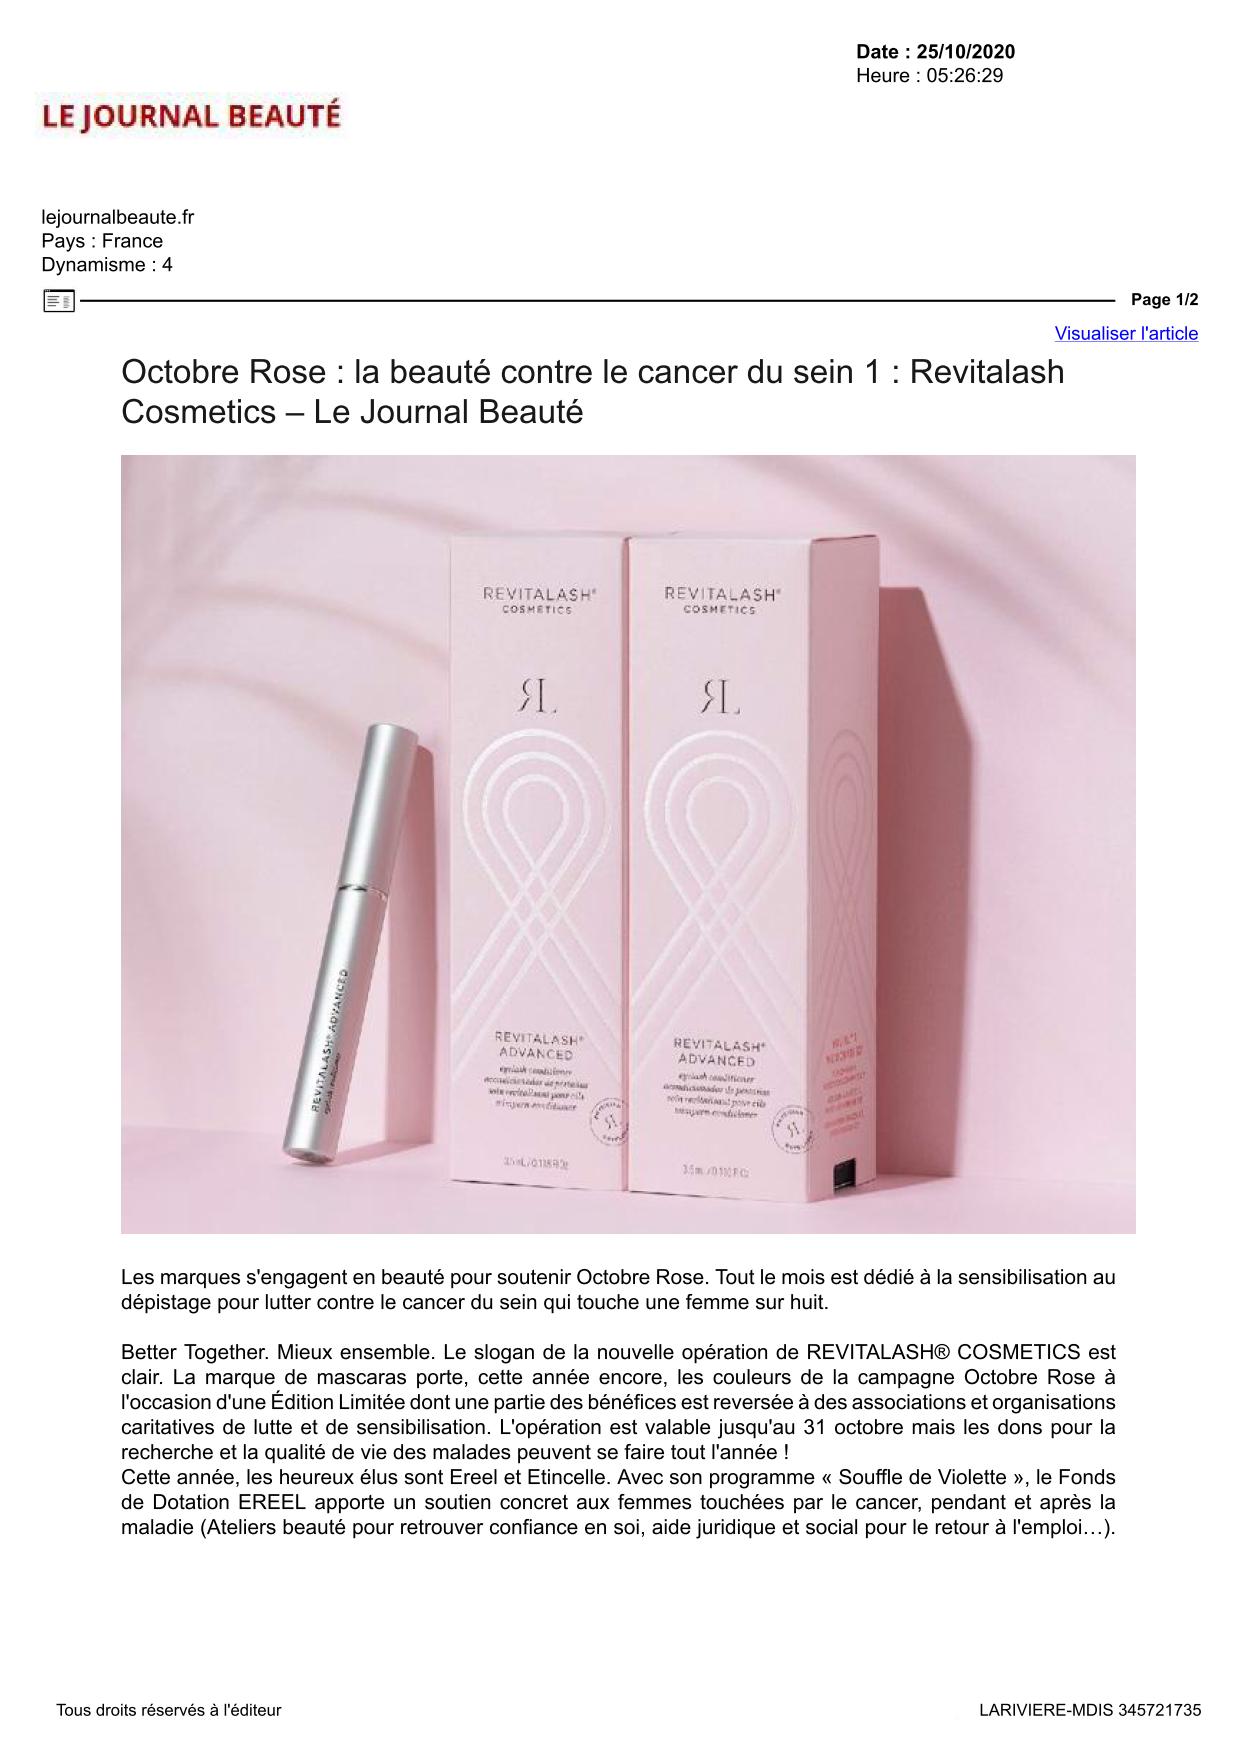 Le Journal Beauté - Octobre 2020 - Revitalash® Cosmetics